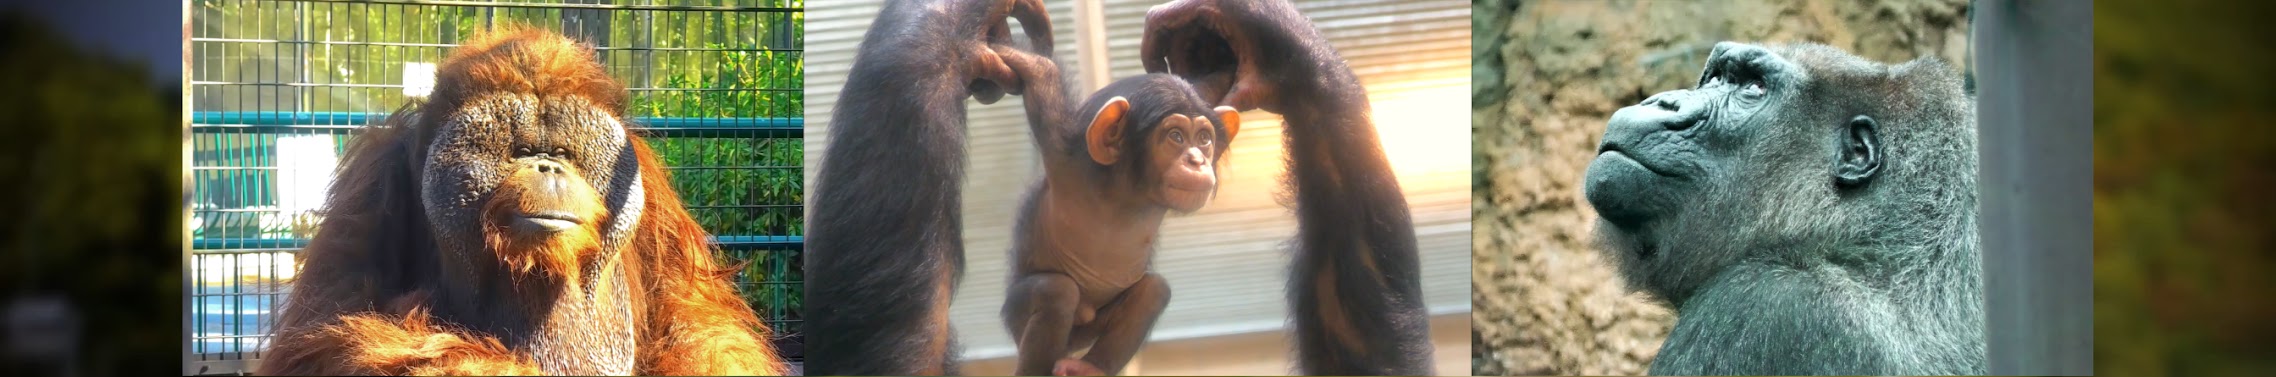 類人猿研究所 Great Apes Zoo - YouTube